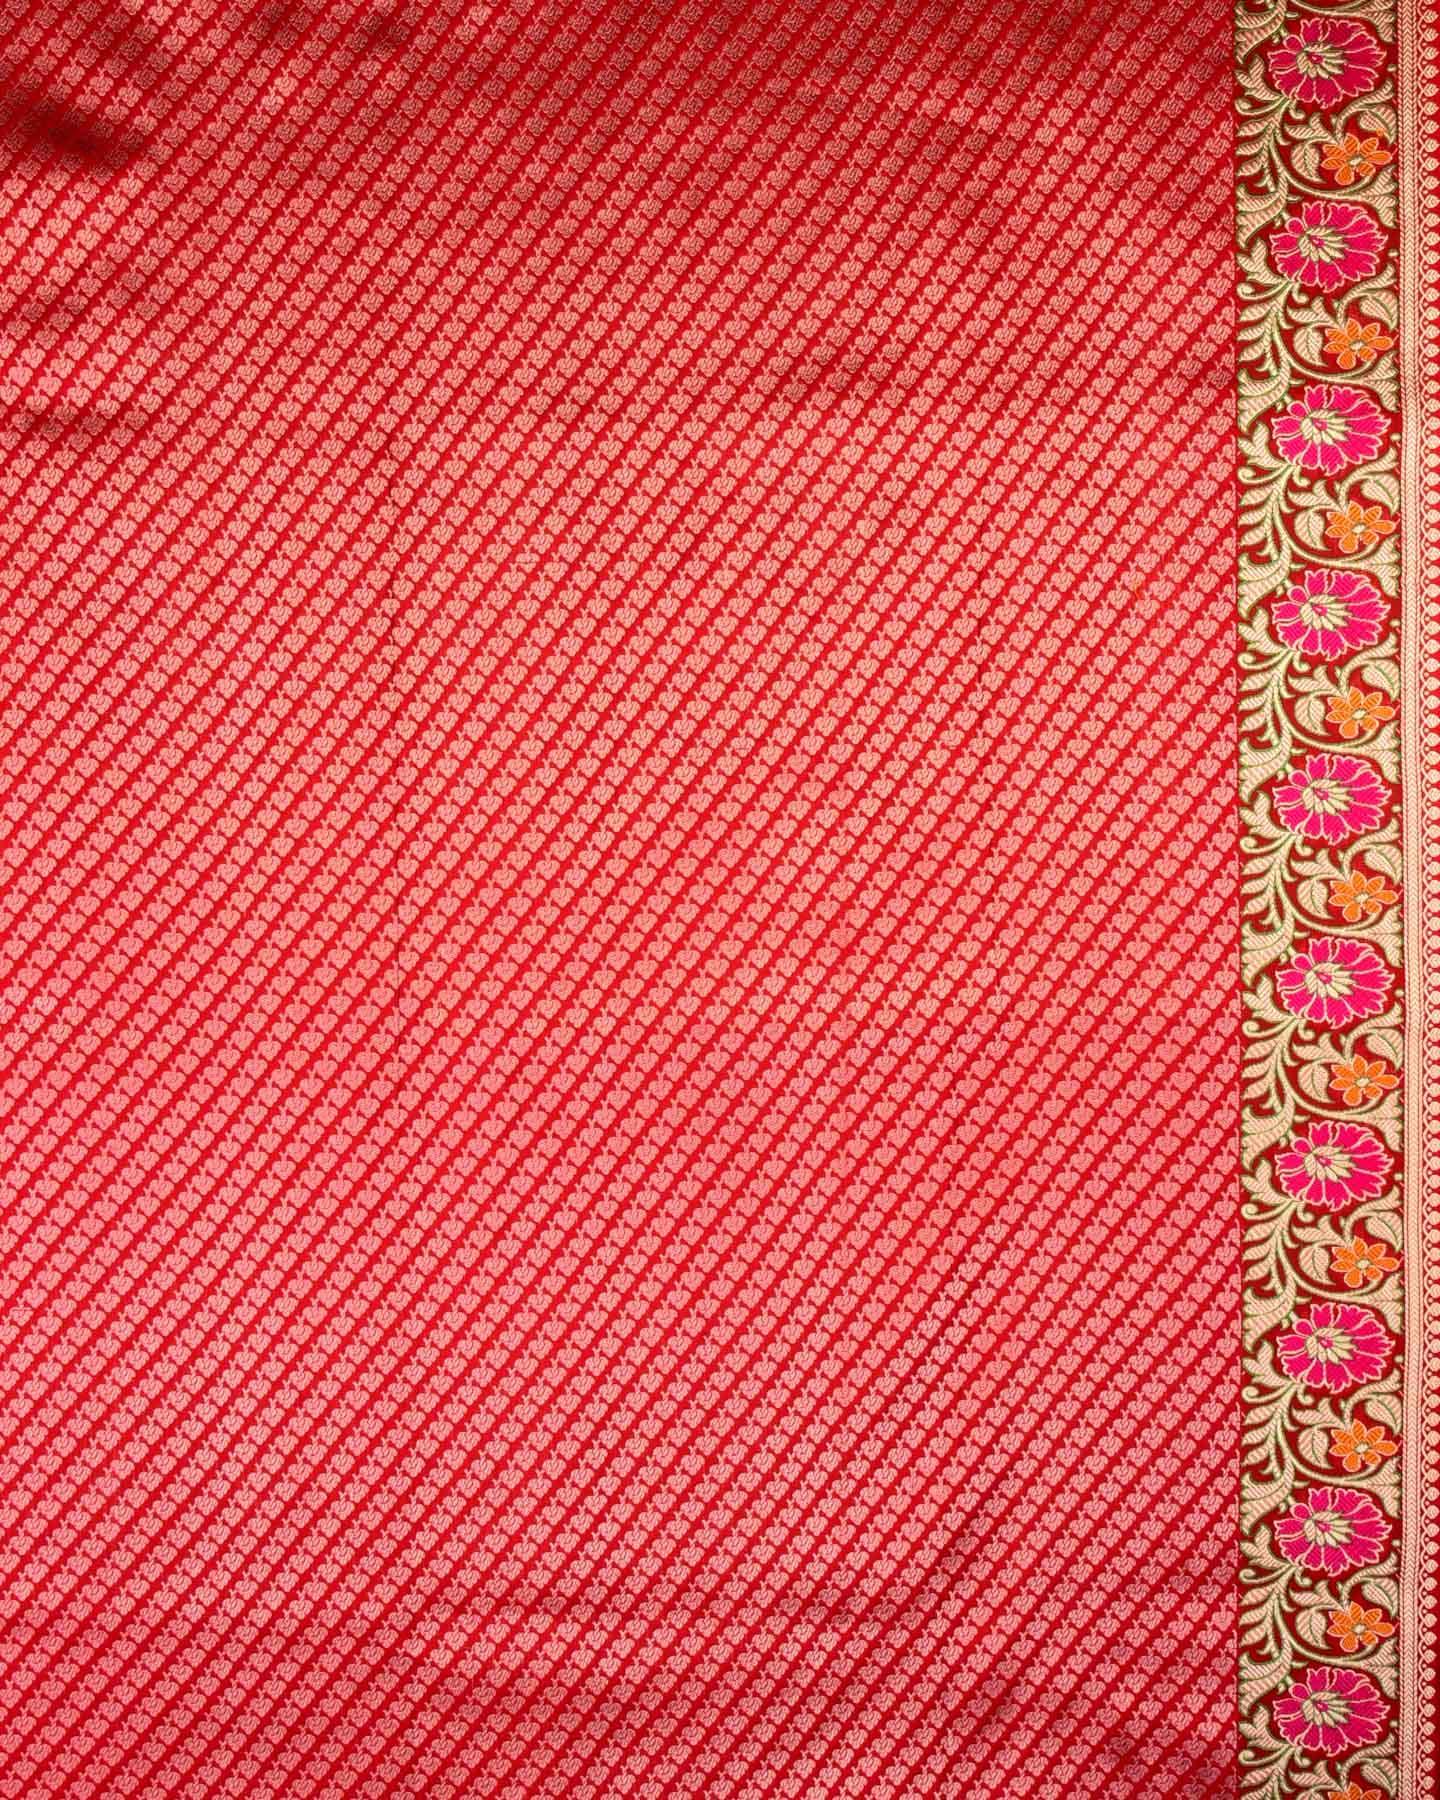 Flamingo Pink Banarasi Zari Dottted Stripes Kadhuan Brocade Handwoven Katan Silk Saree with Meena Bel Border - By HolyWeaves, Benares